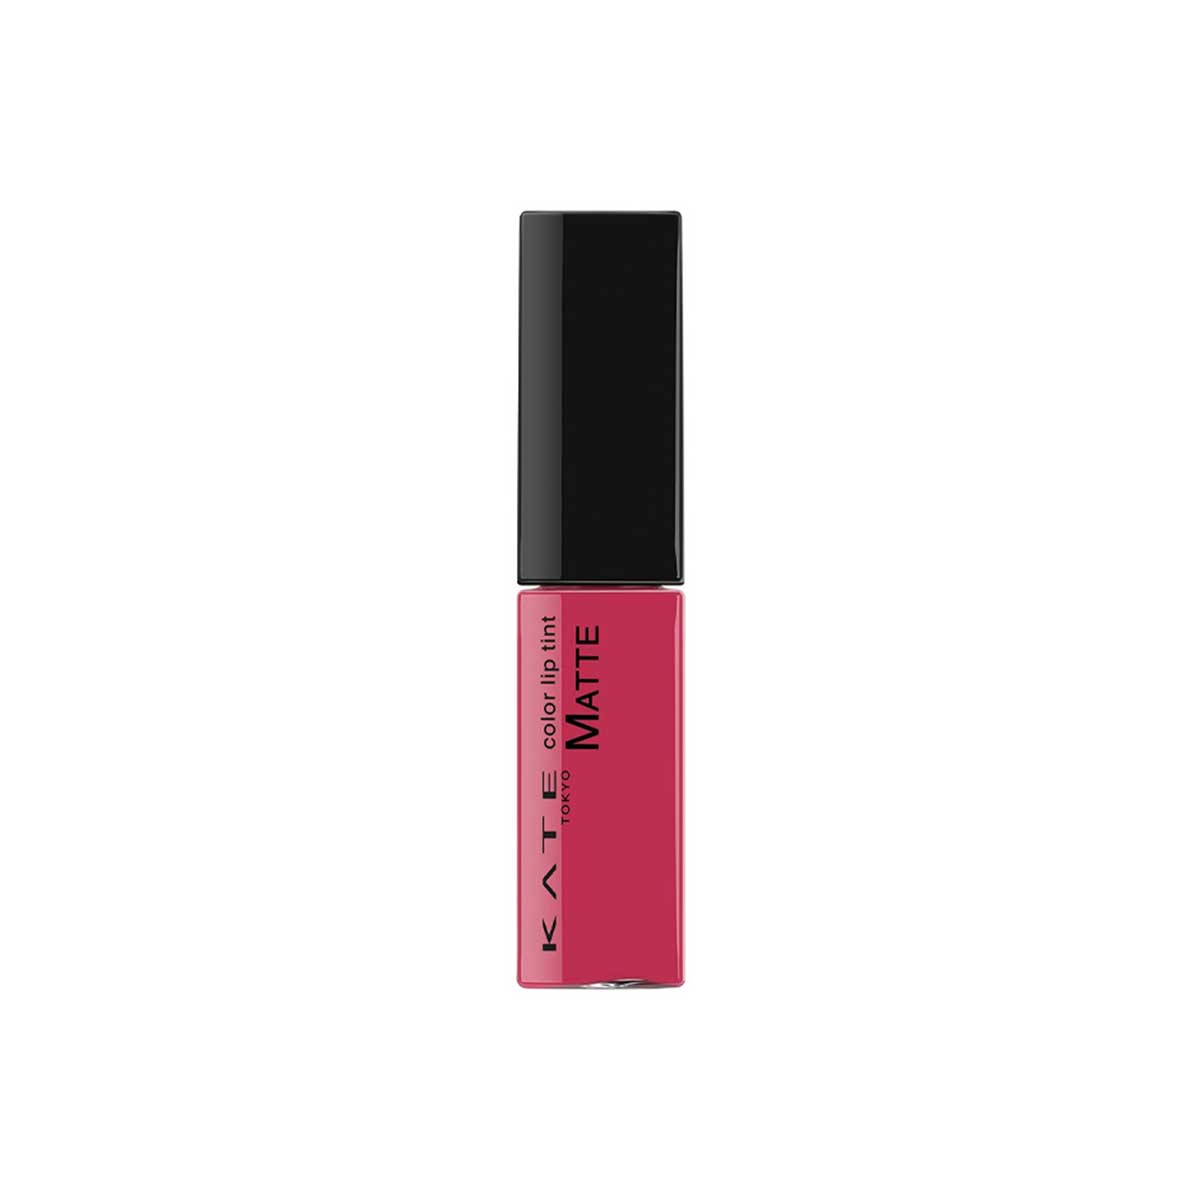 Color Lip Tint Matte #PK-2 Pink  6.5g